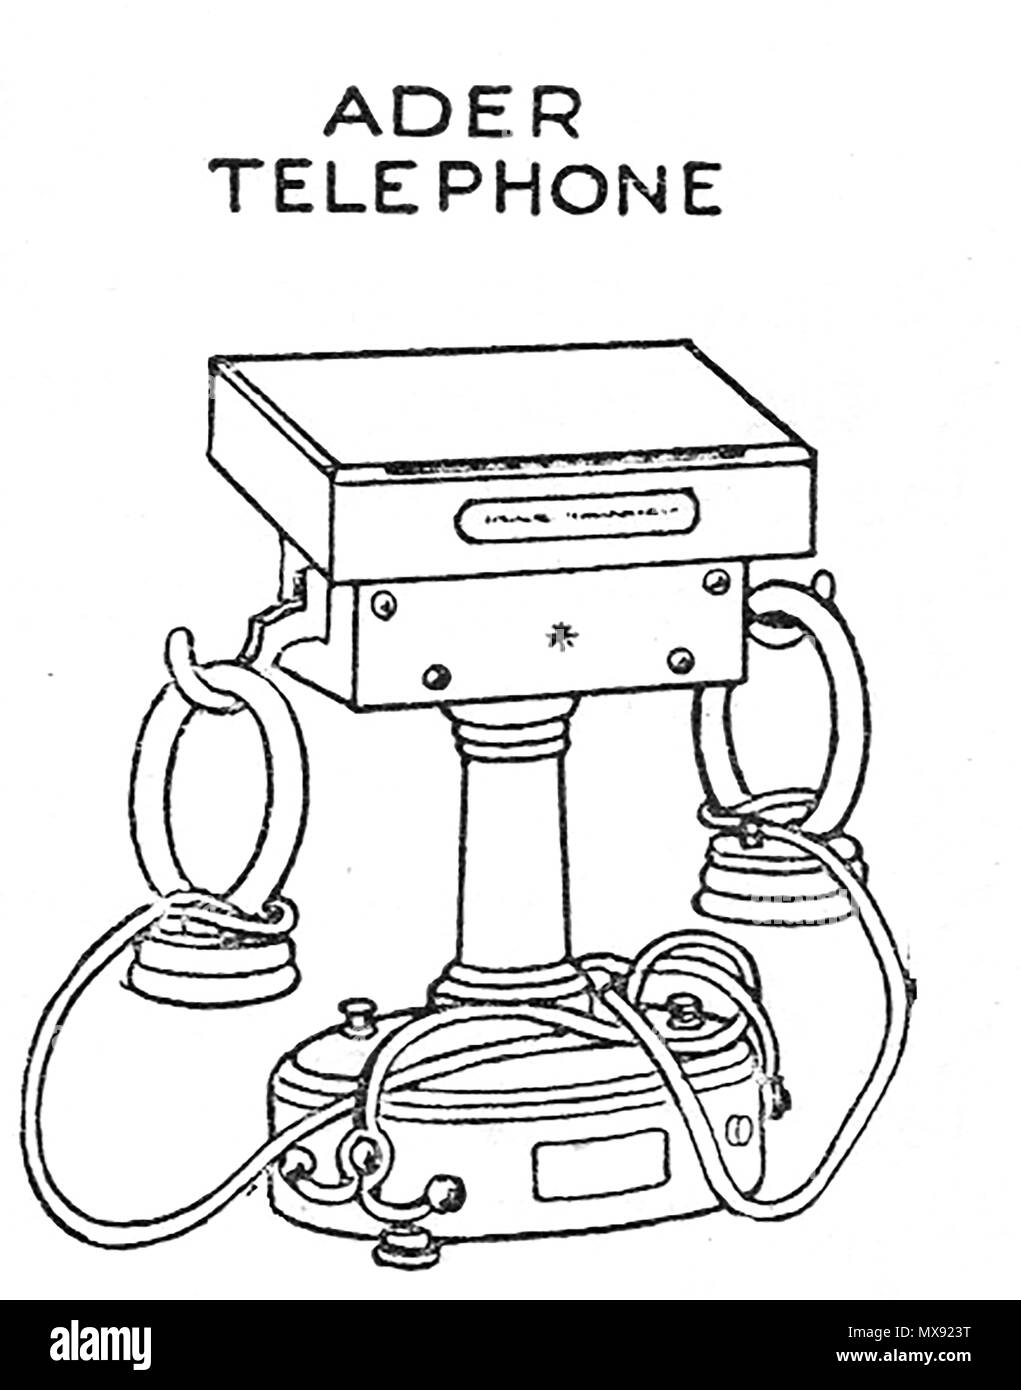 L'équipement téléphonique au début de 1930 - illustration d'un appareil téléphonique Ader Banque D'Images